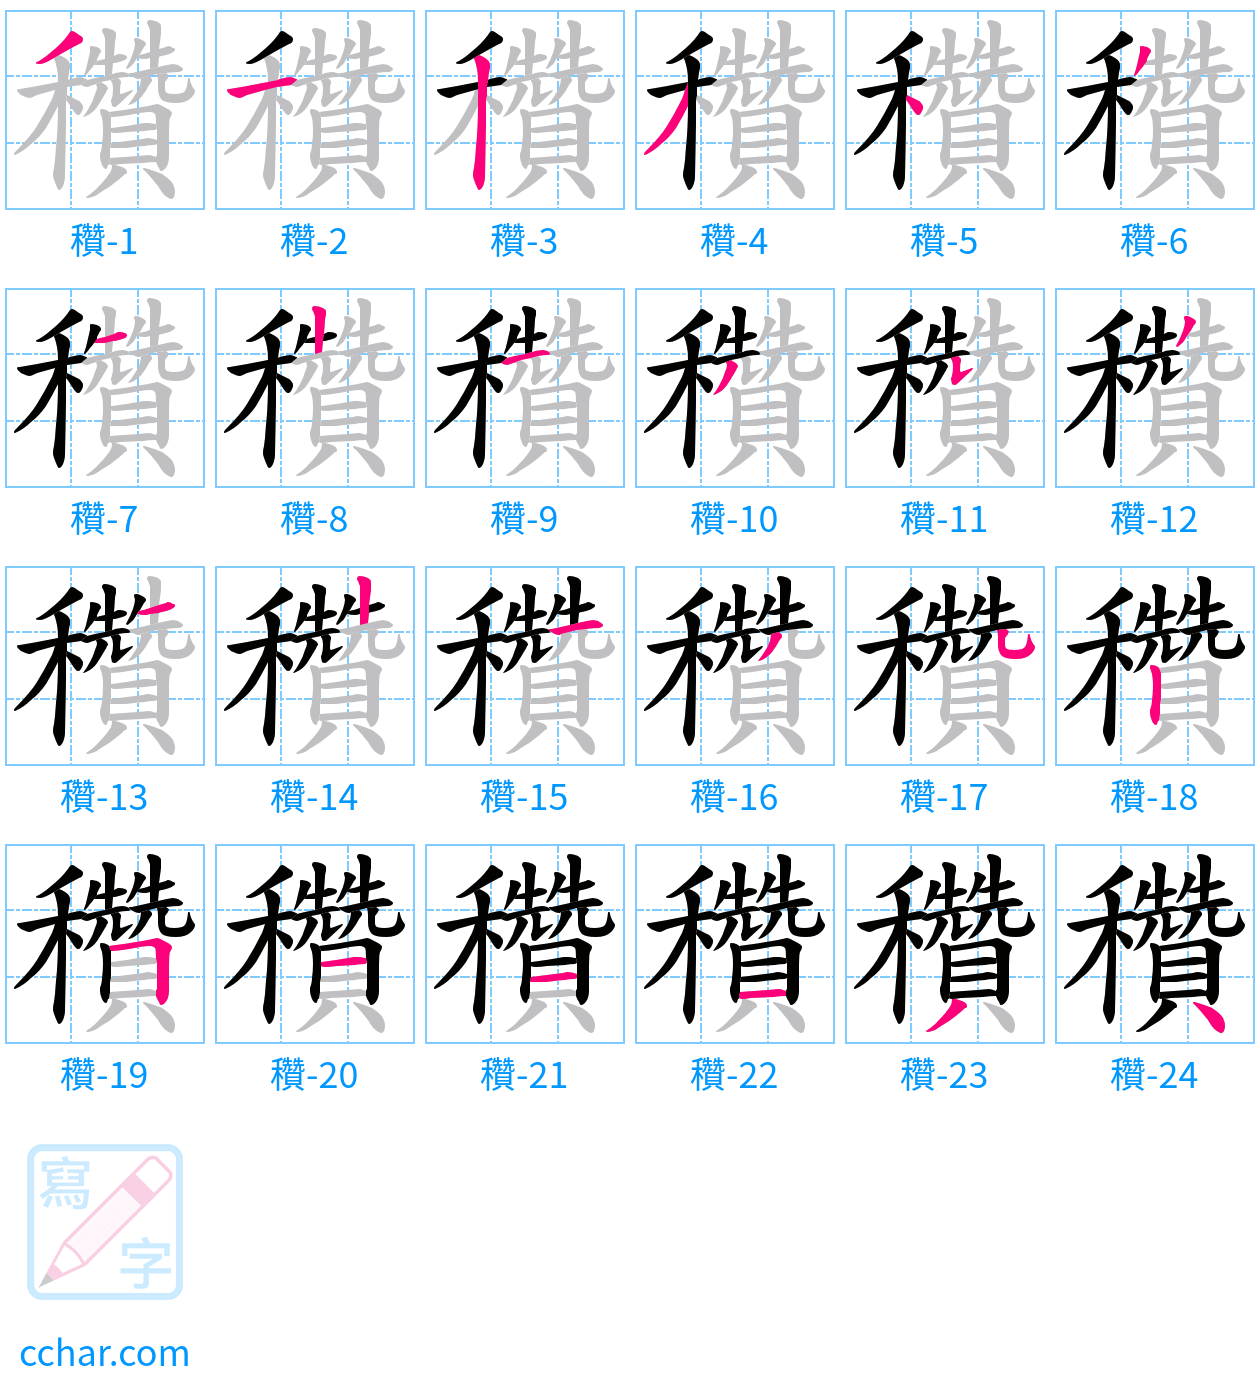 穳 stroke order step-by-step diagram